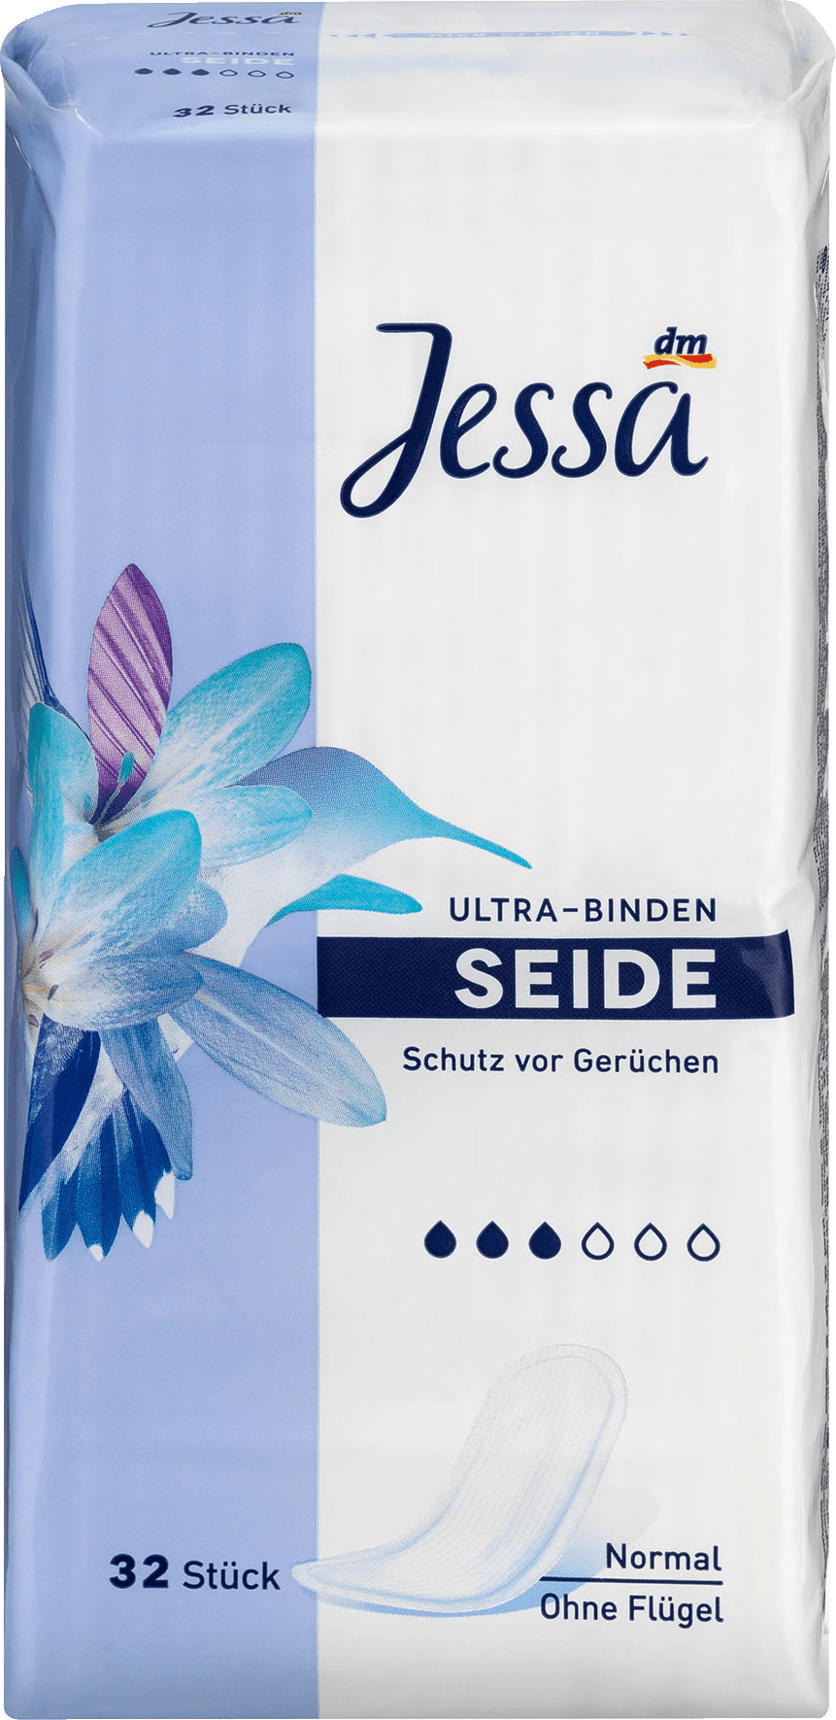 Jessa Ultra Binden Seide Nur 1 55 Dm Drogerie Markt Angebot Barcoo